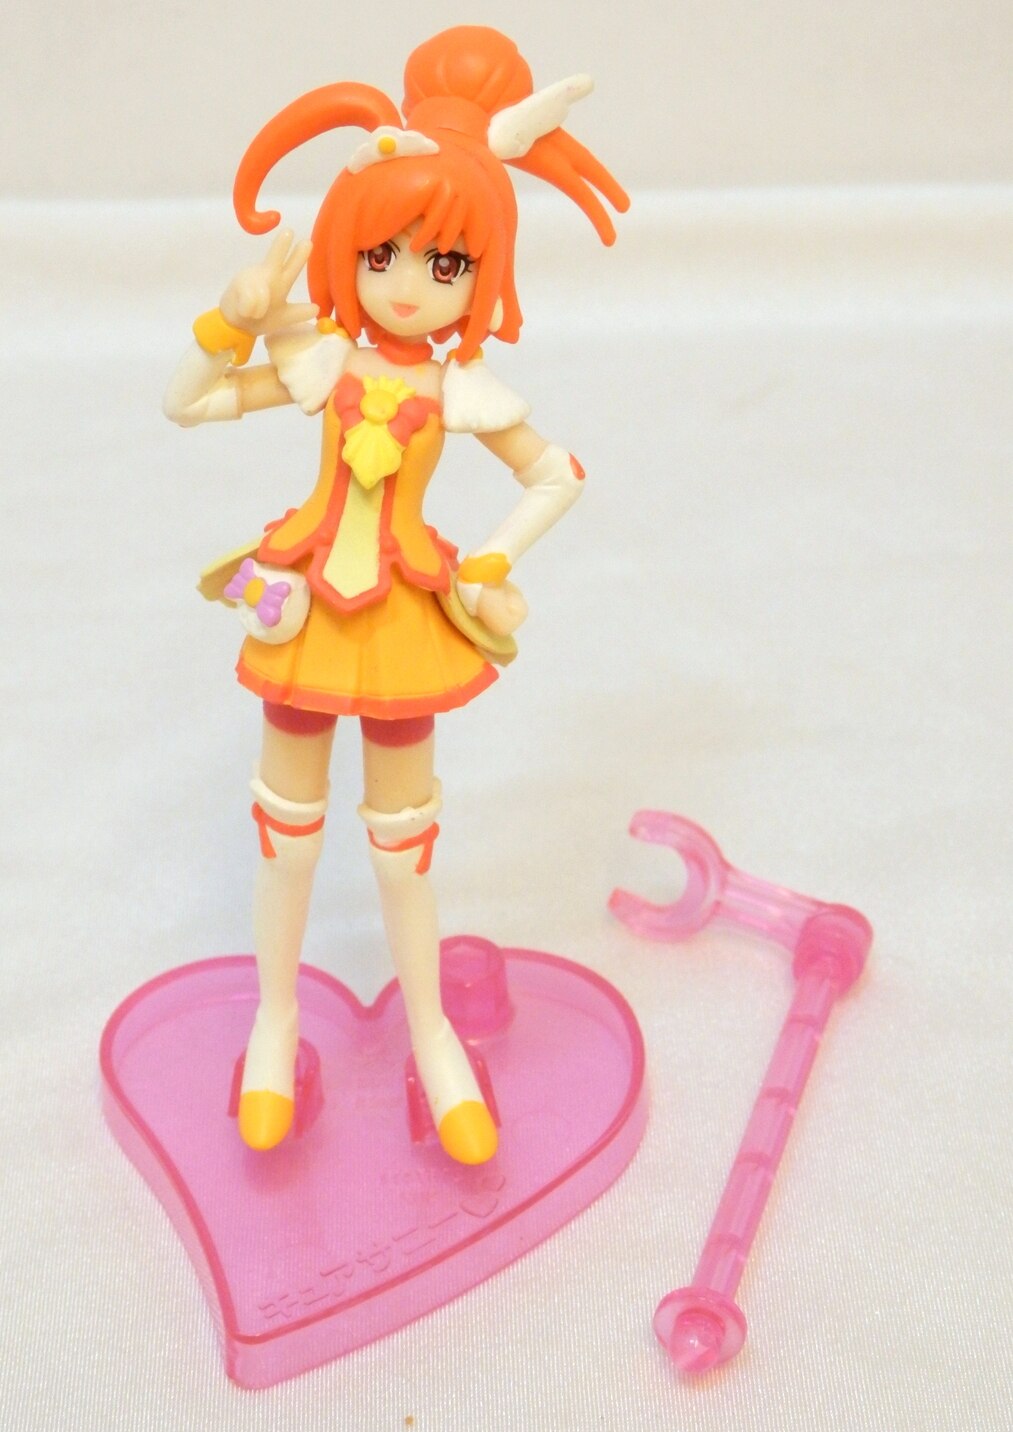 Bandai Smile Pretty Cure Glitter Force Cutie Figure 2 2 Cure Sunny Mandarake 在线商店 7909